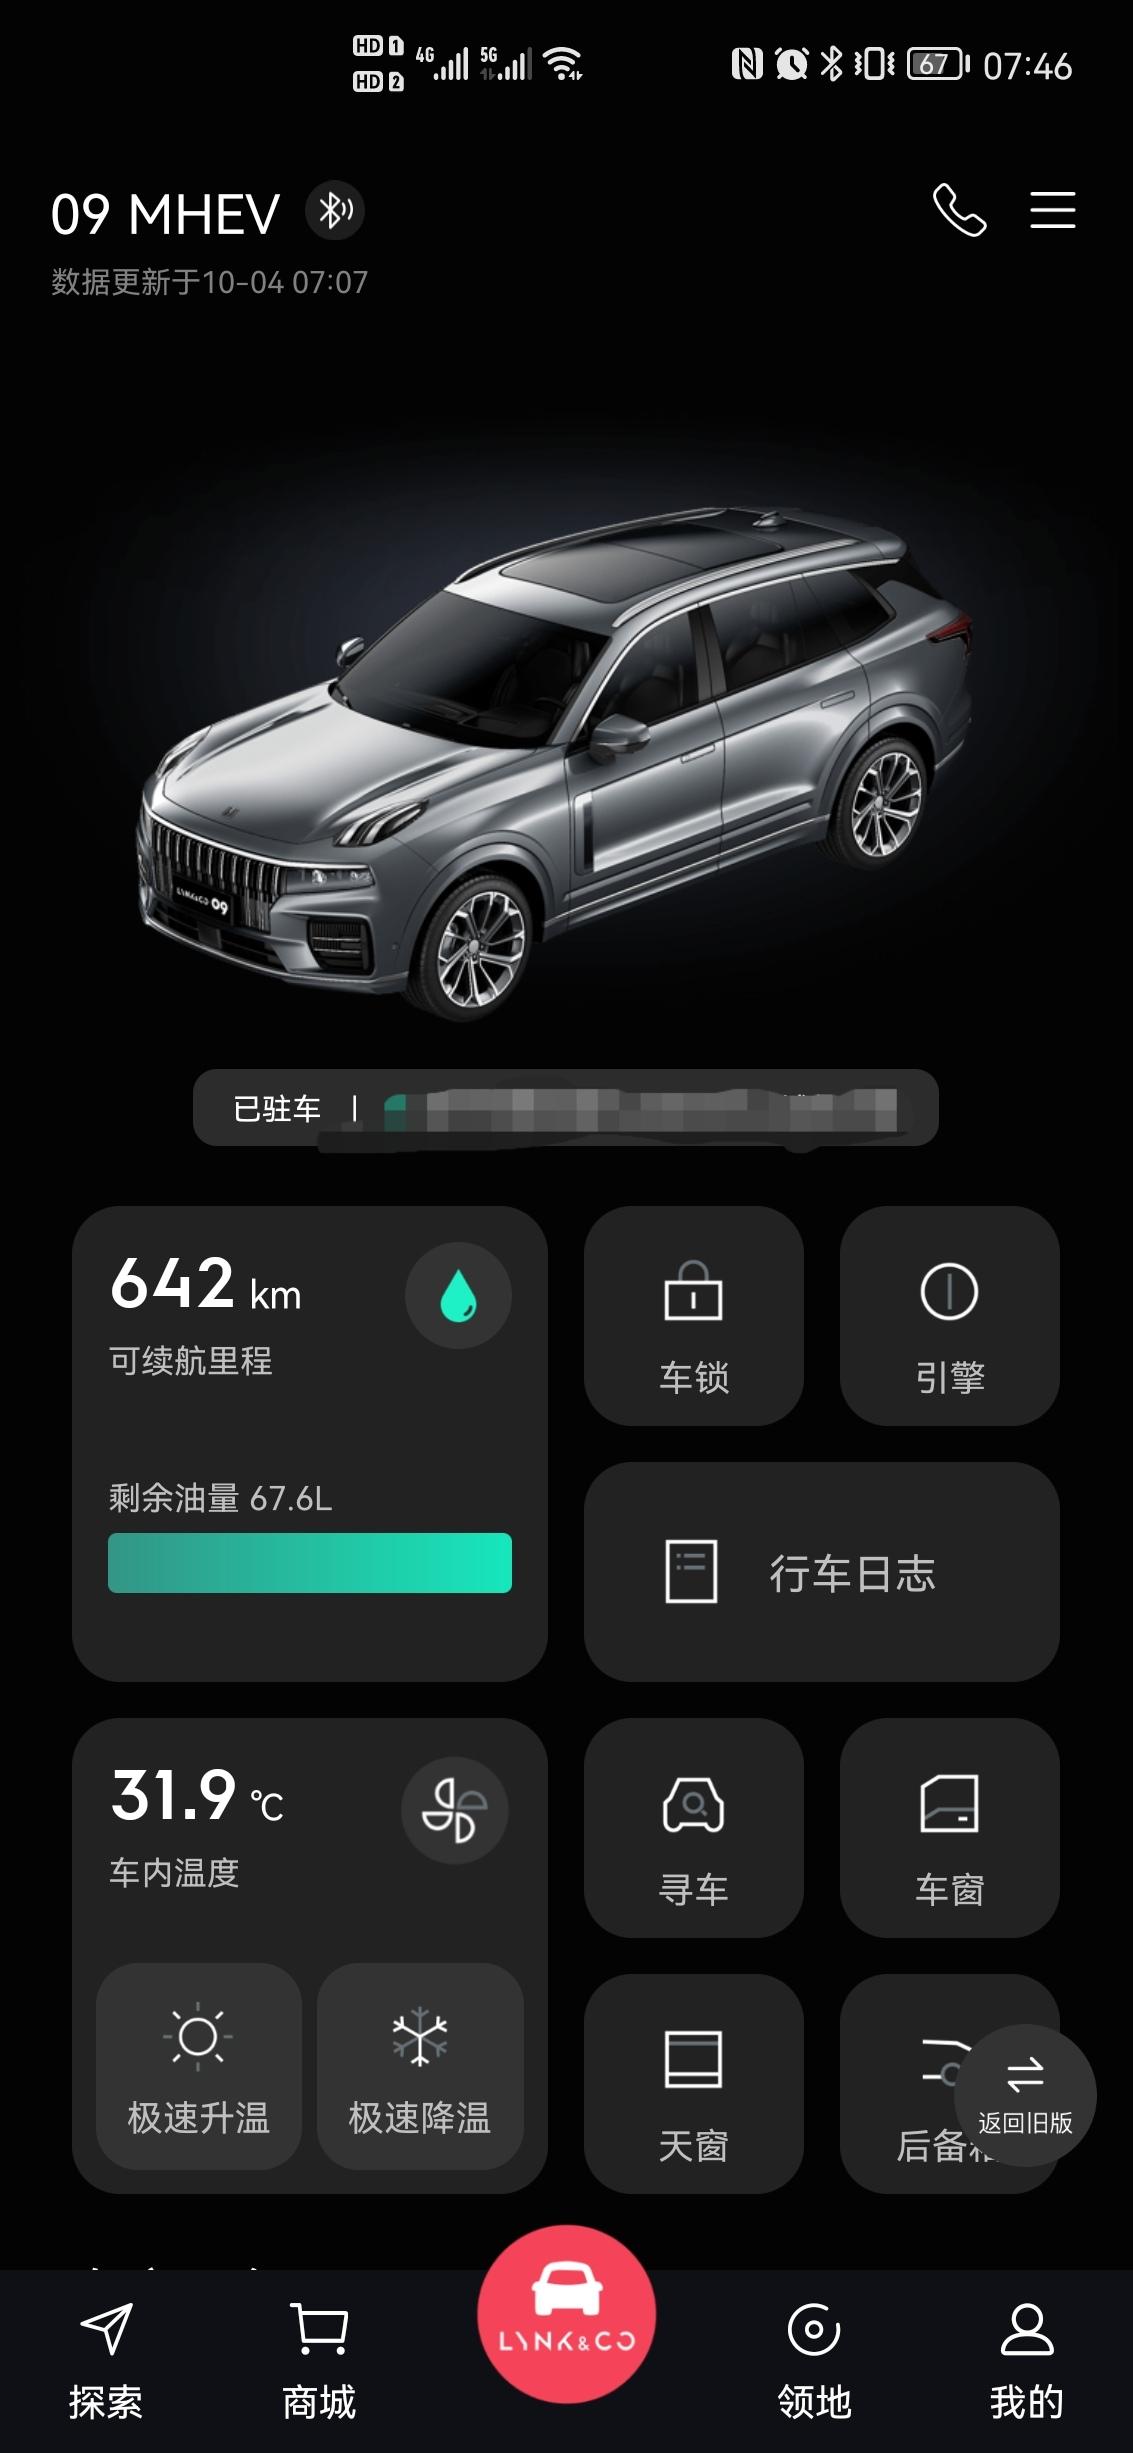 领克09 可以注册多个app连接同一辆车吗，这样就可以两个人用手机作为蓝牙钥匙了